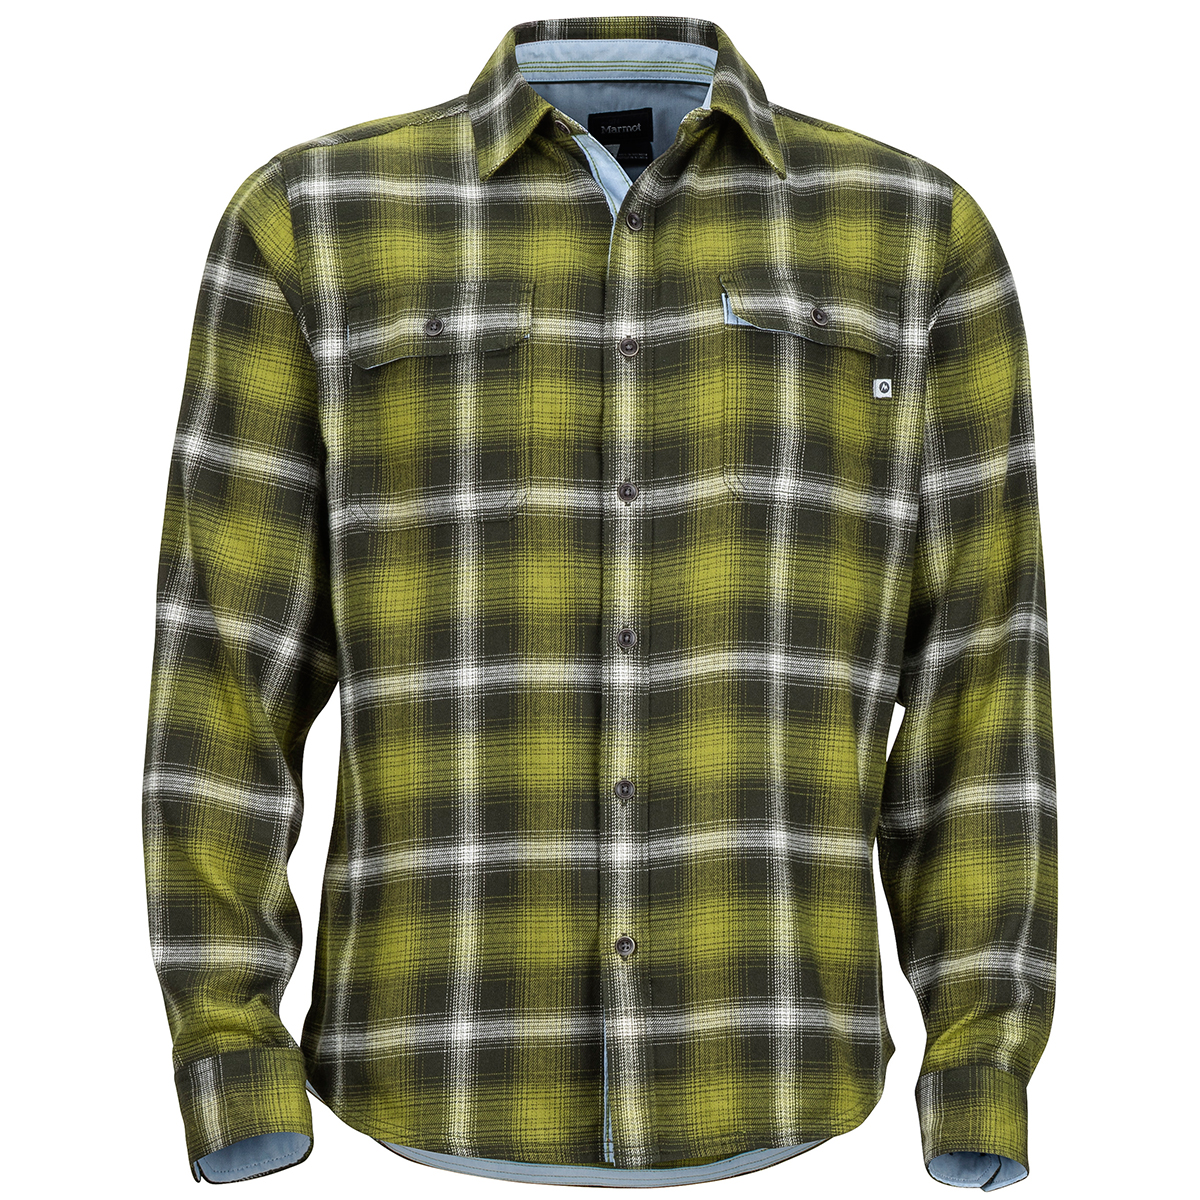 Marmot Men's Jasper Midweight Long-Sleeve Flannel Shirt - Green, XL